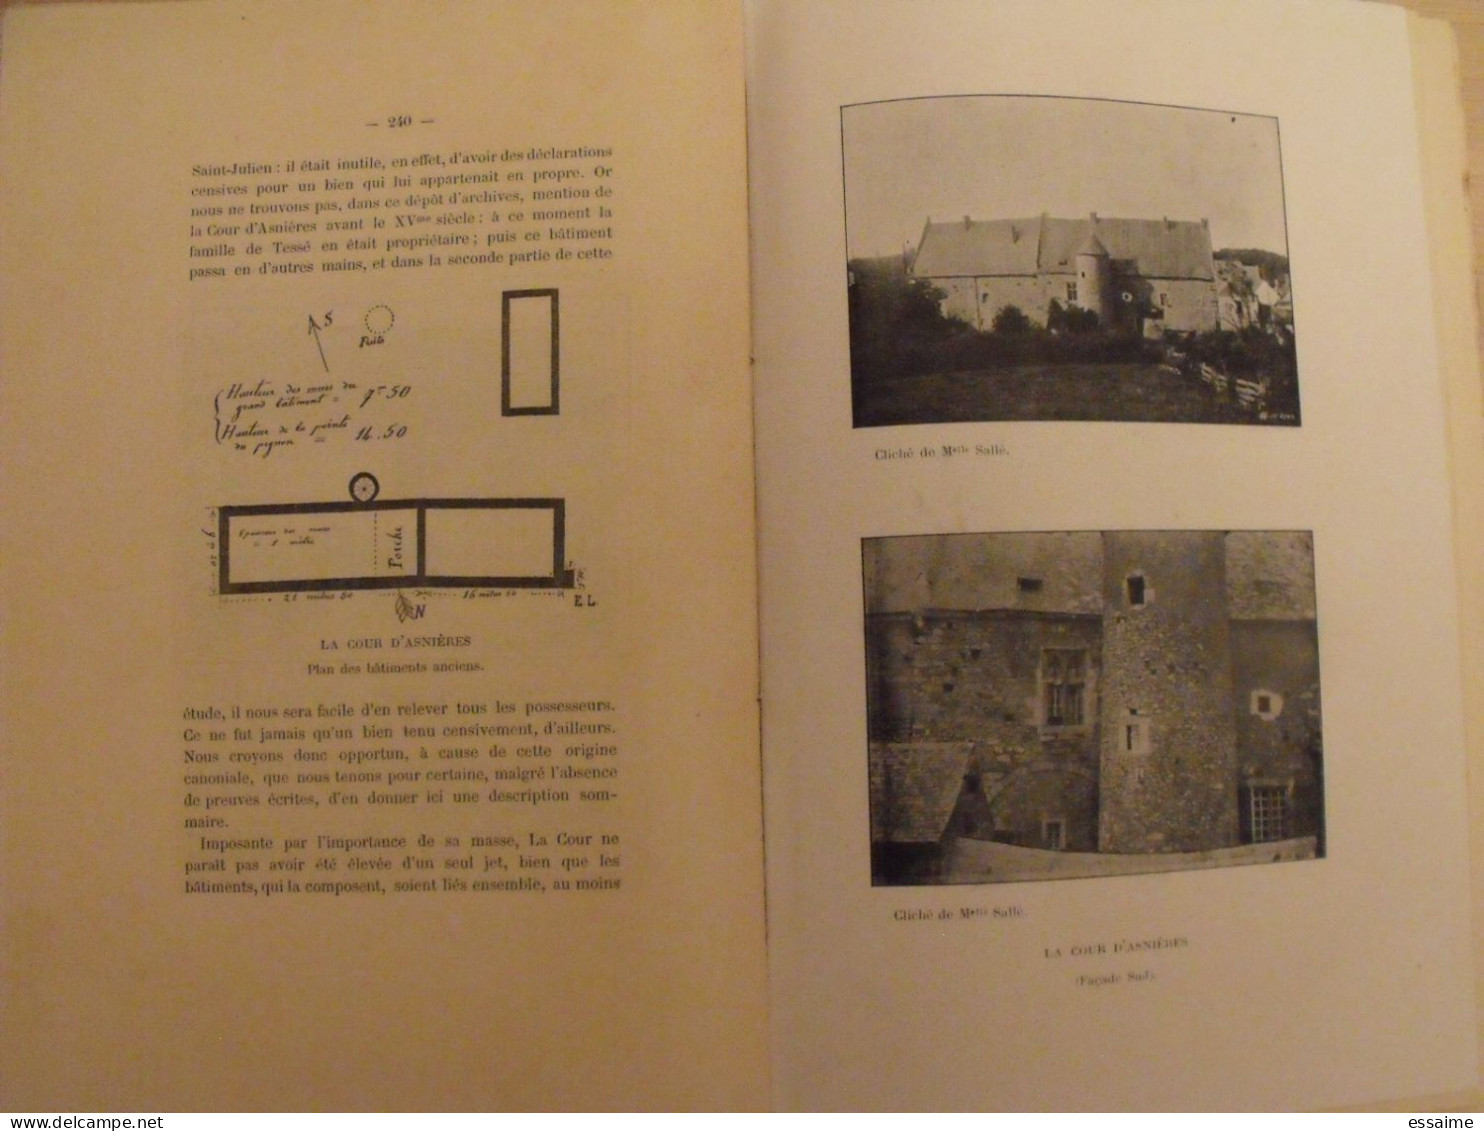 revue historique et archéologique du Maine. année 1904, 1er semestre (3 livraisons). tome LV. Mamers, Le Mans